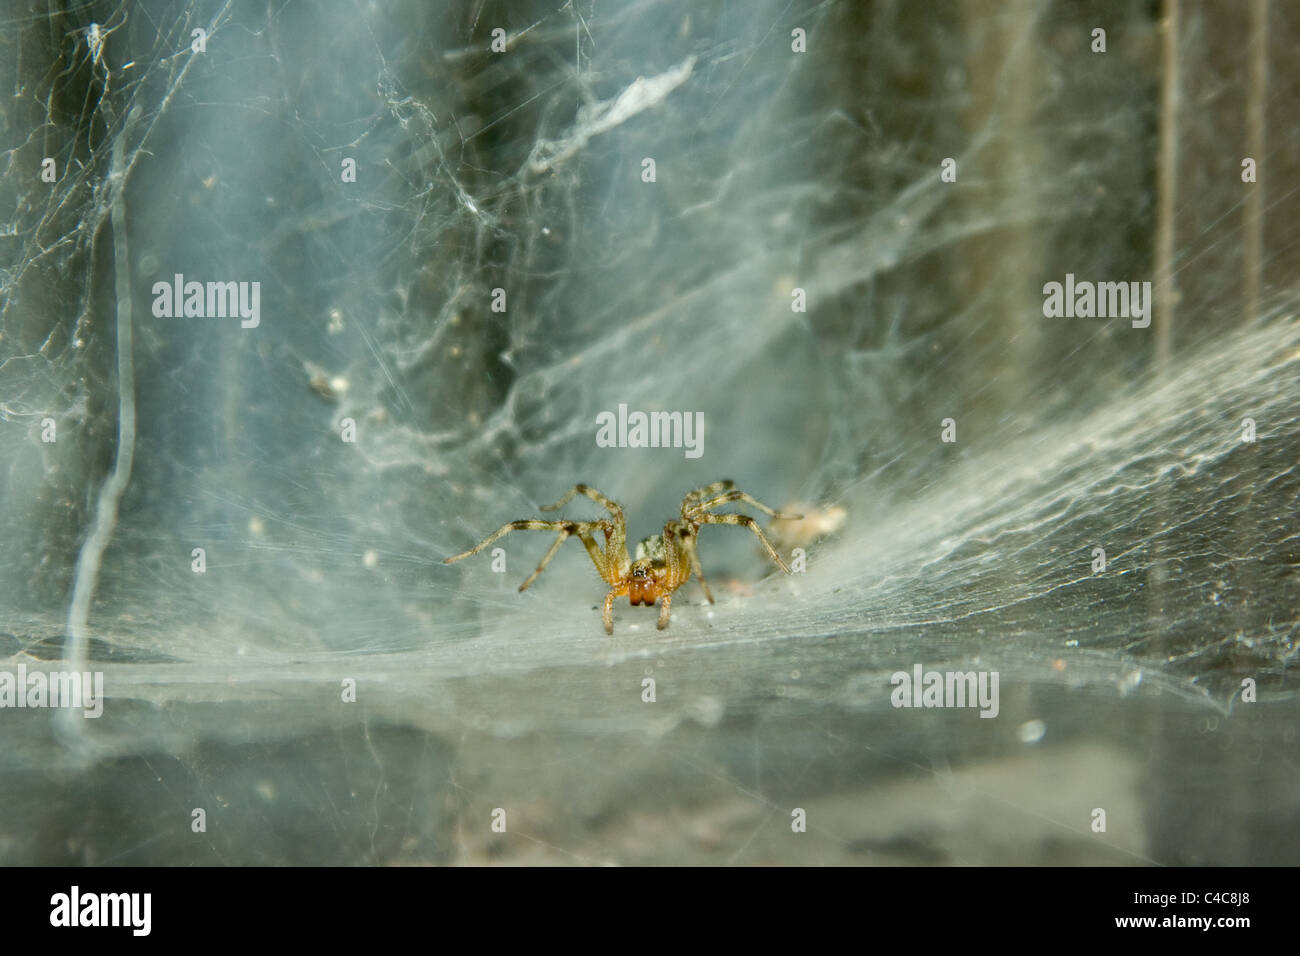 Agelenta limibata spider in attesa di preda Foto Stock